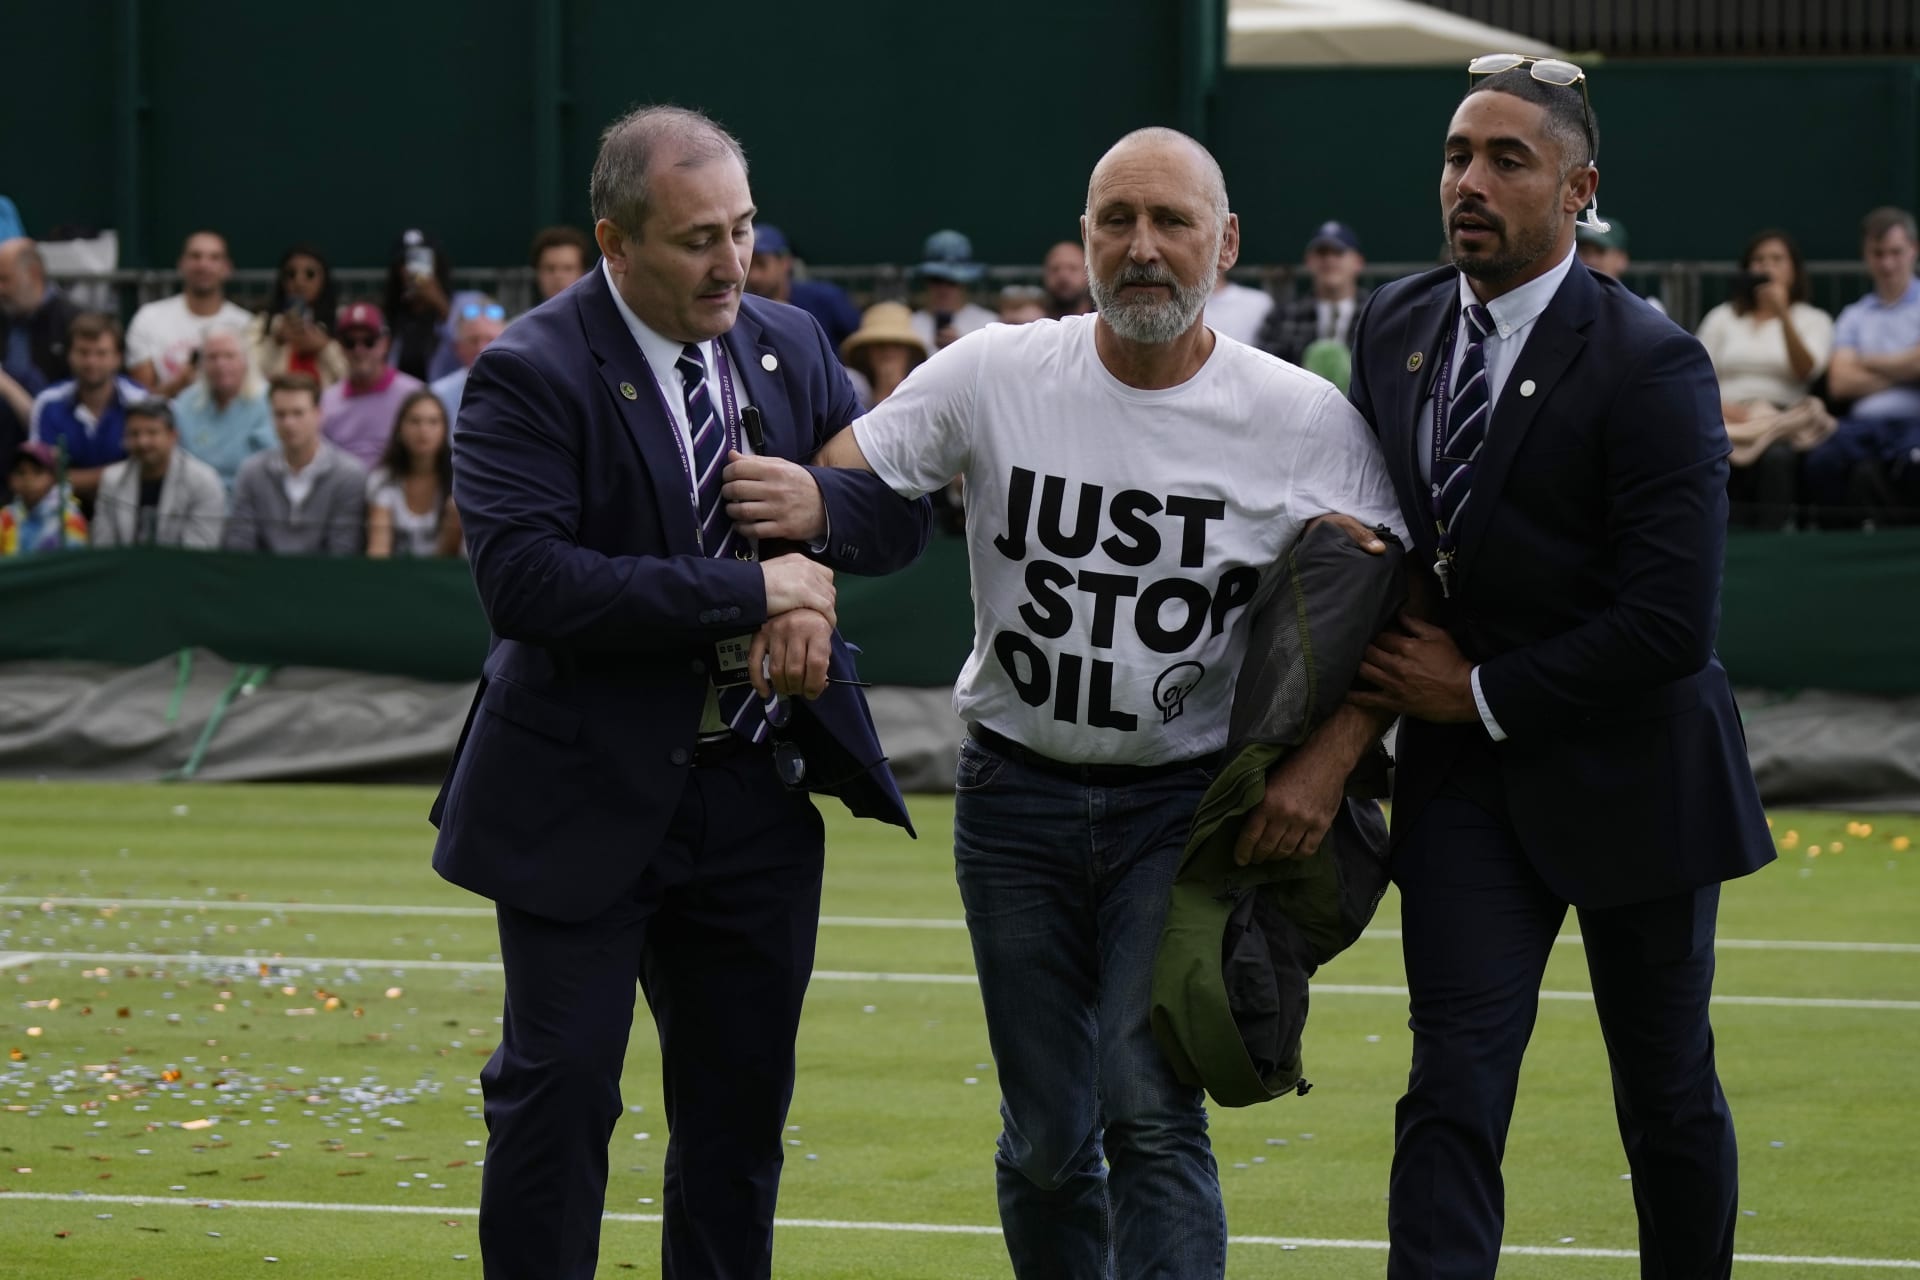 Klimatičtí aktivisté narušili program Wimbledonu.